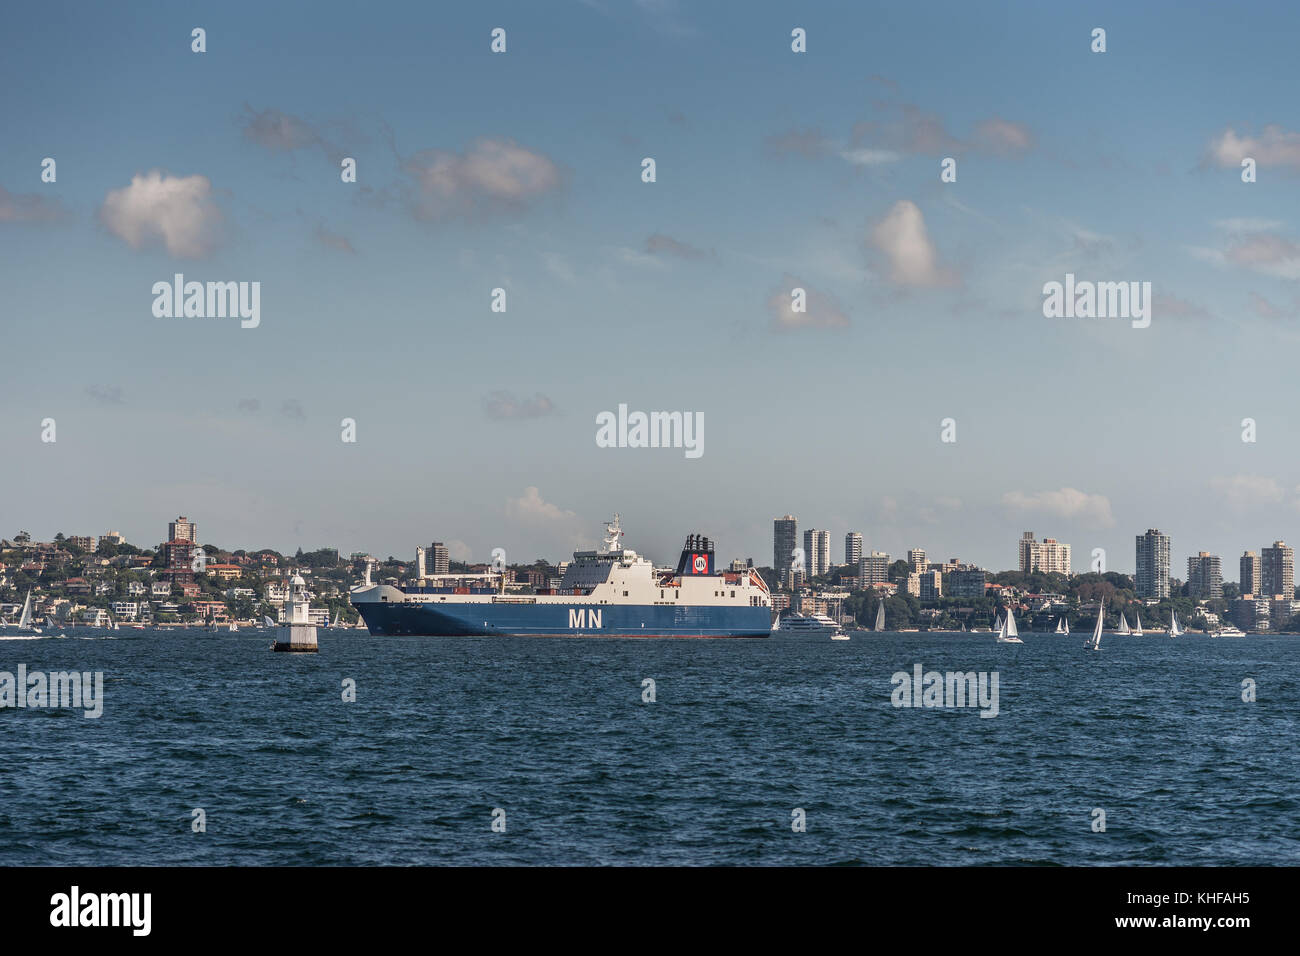 Sydney, Australia - 26 marzo 2017: blu bianco francese calao mn ro-ro nave da carico nel porto di Sydney su blu acqua sotto il cielo aperto con edilizia residenziale Foto Stock